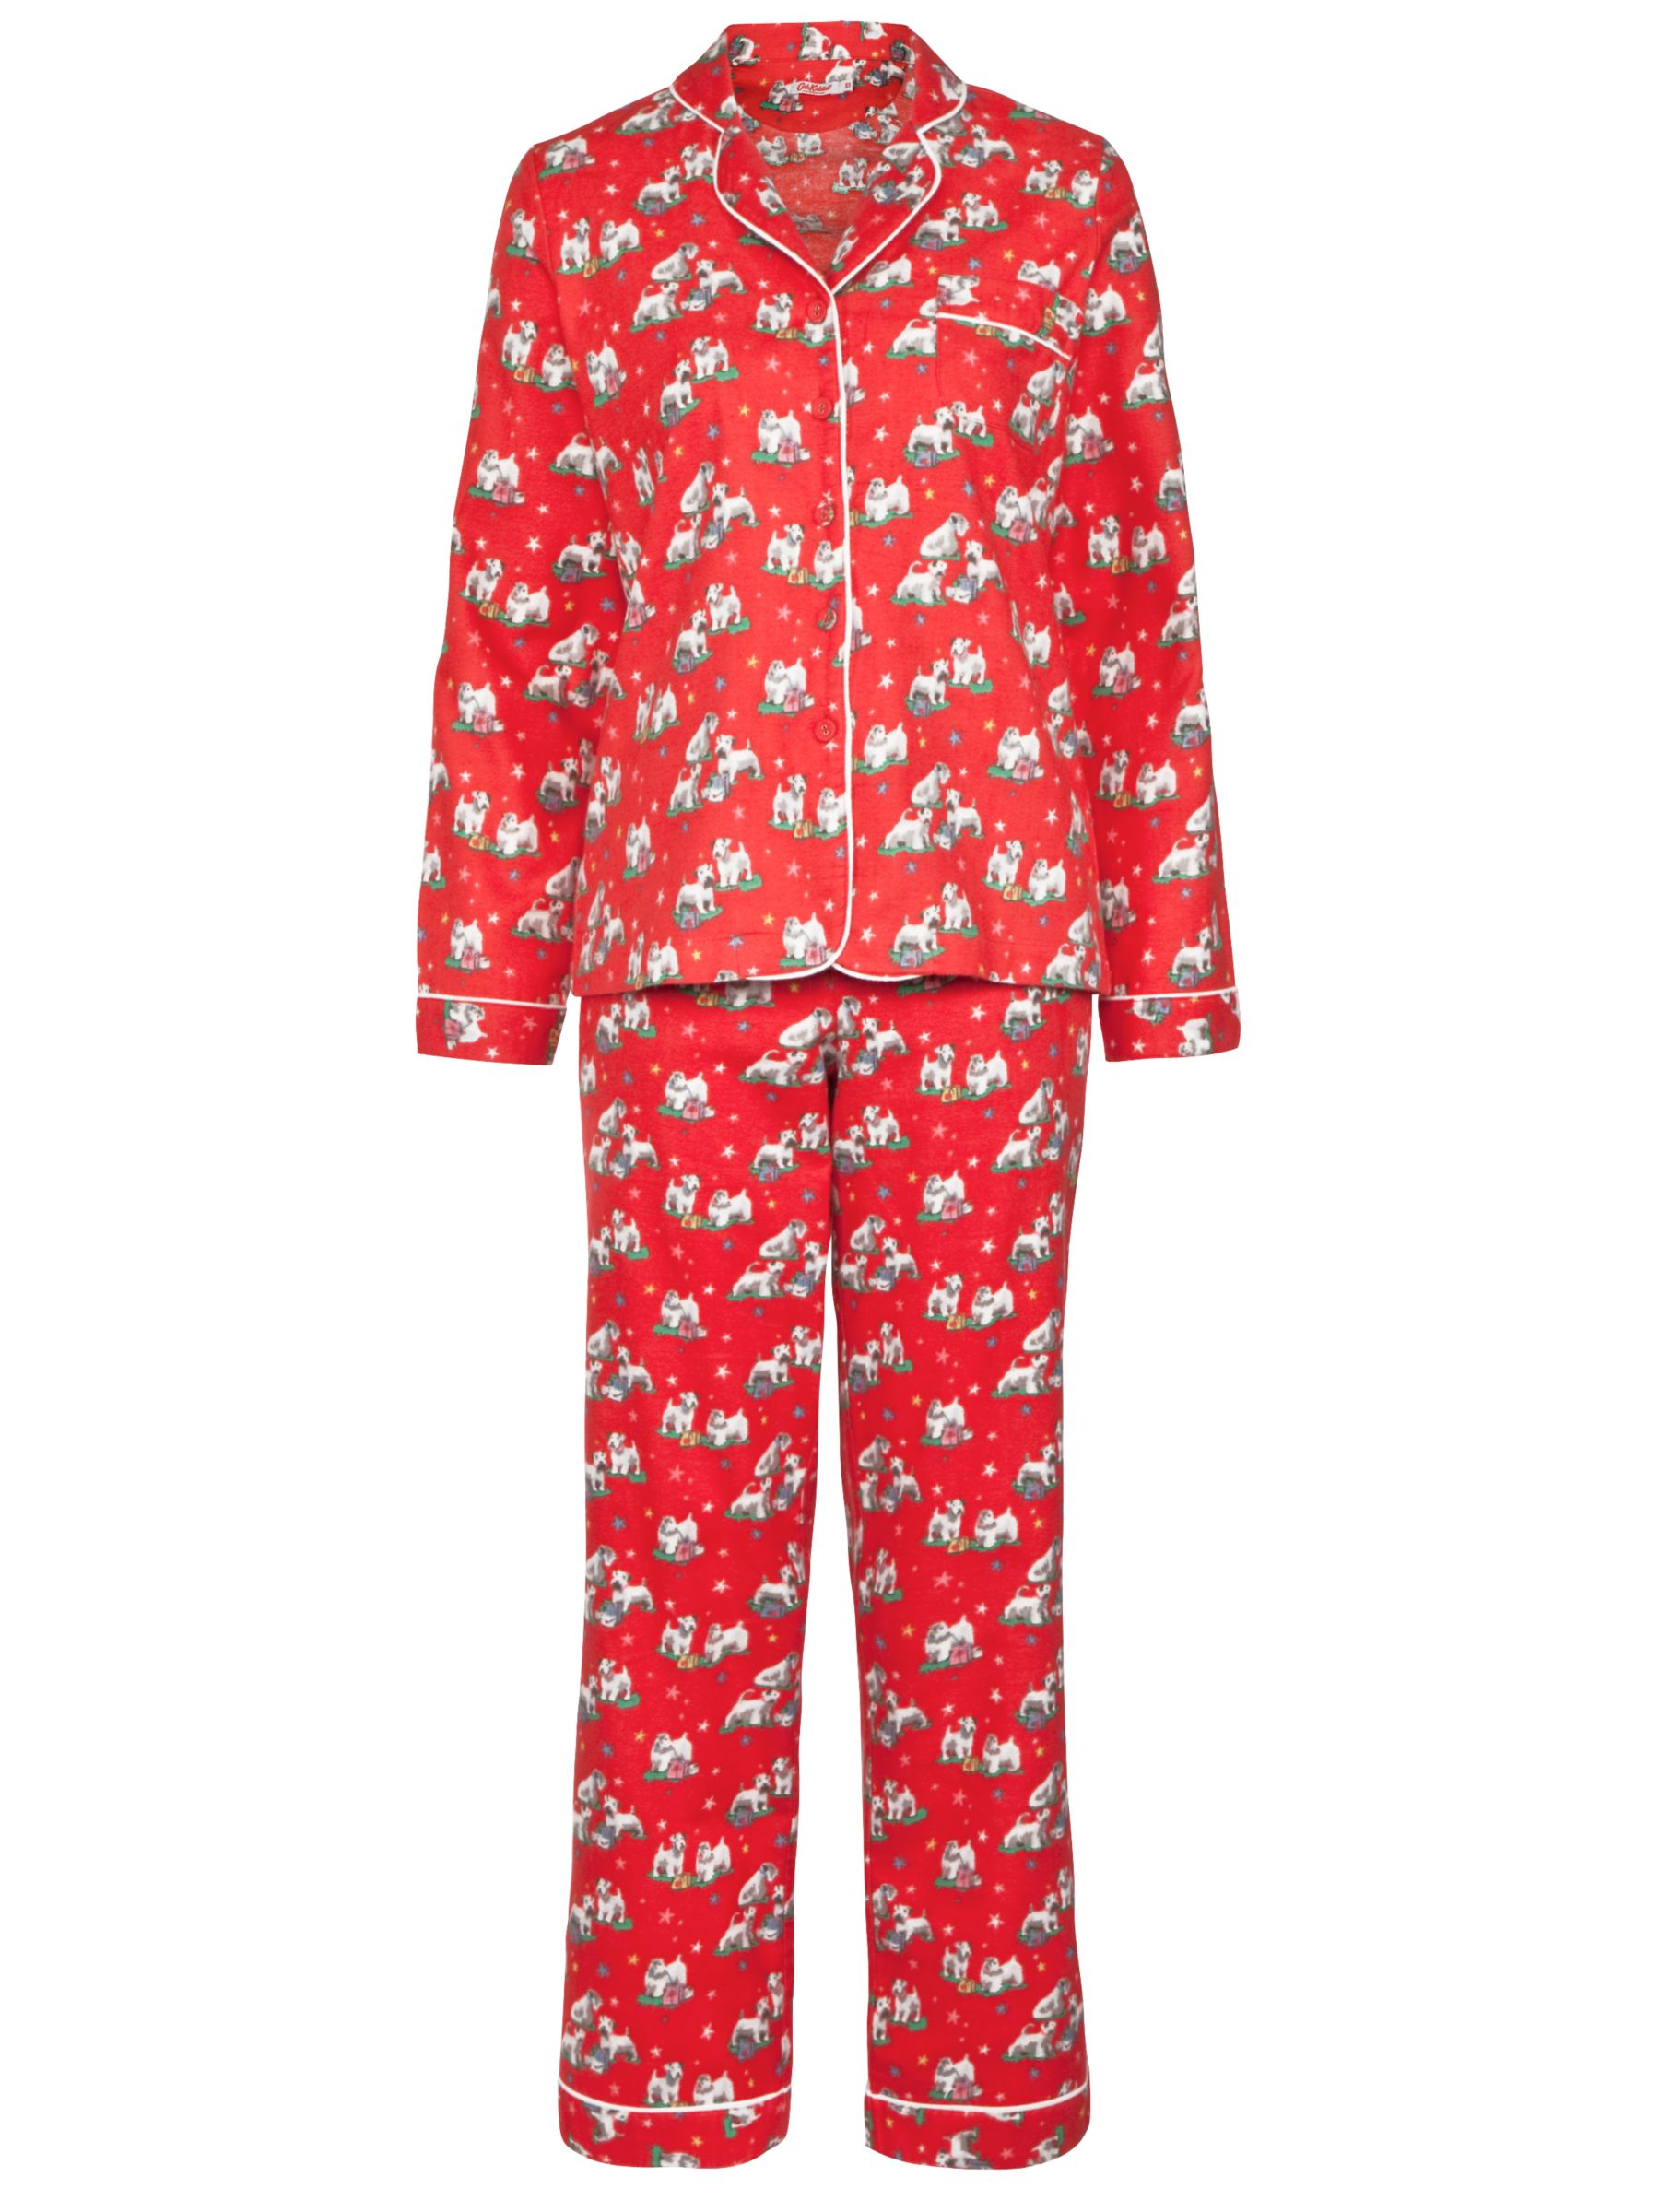 cath kidston pyjamas womens